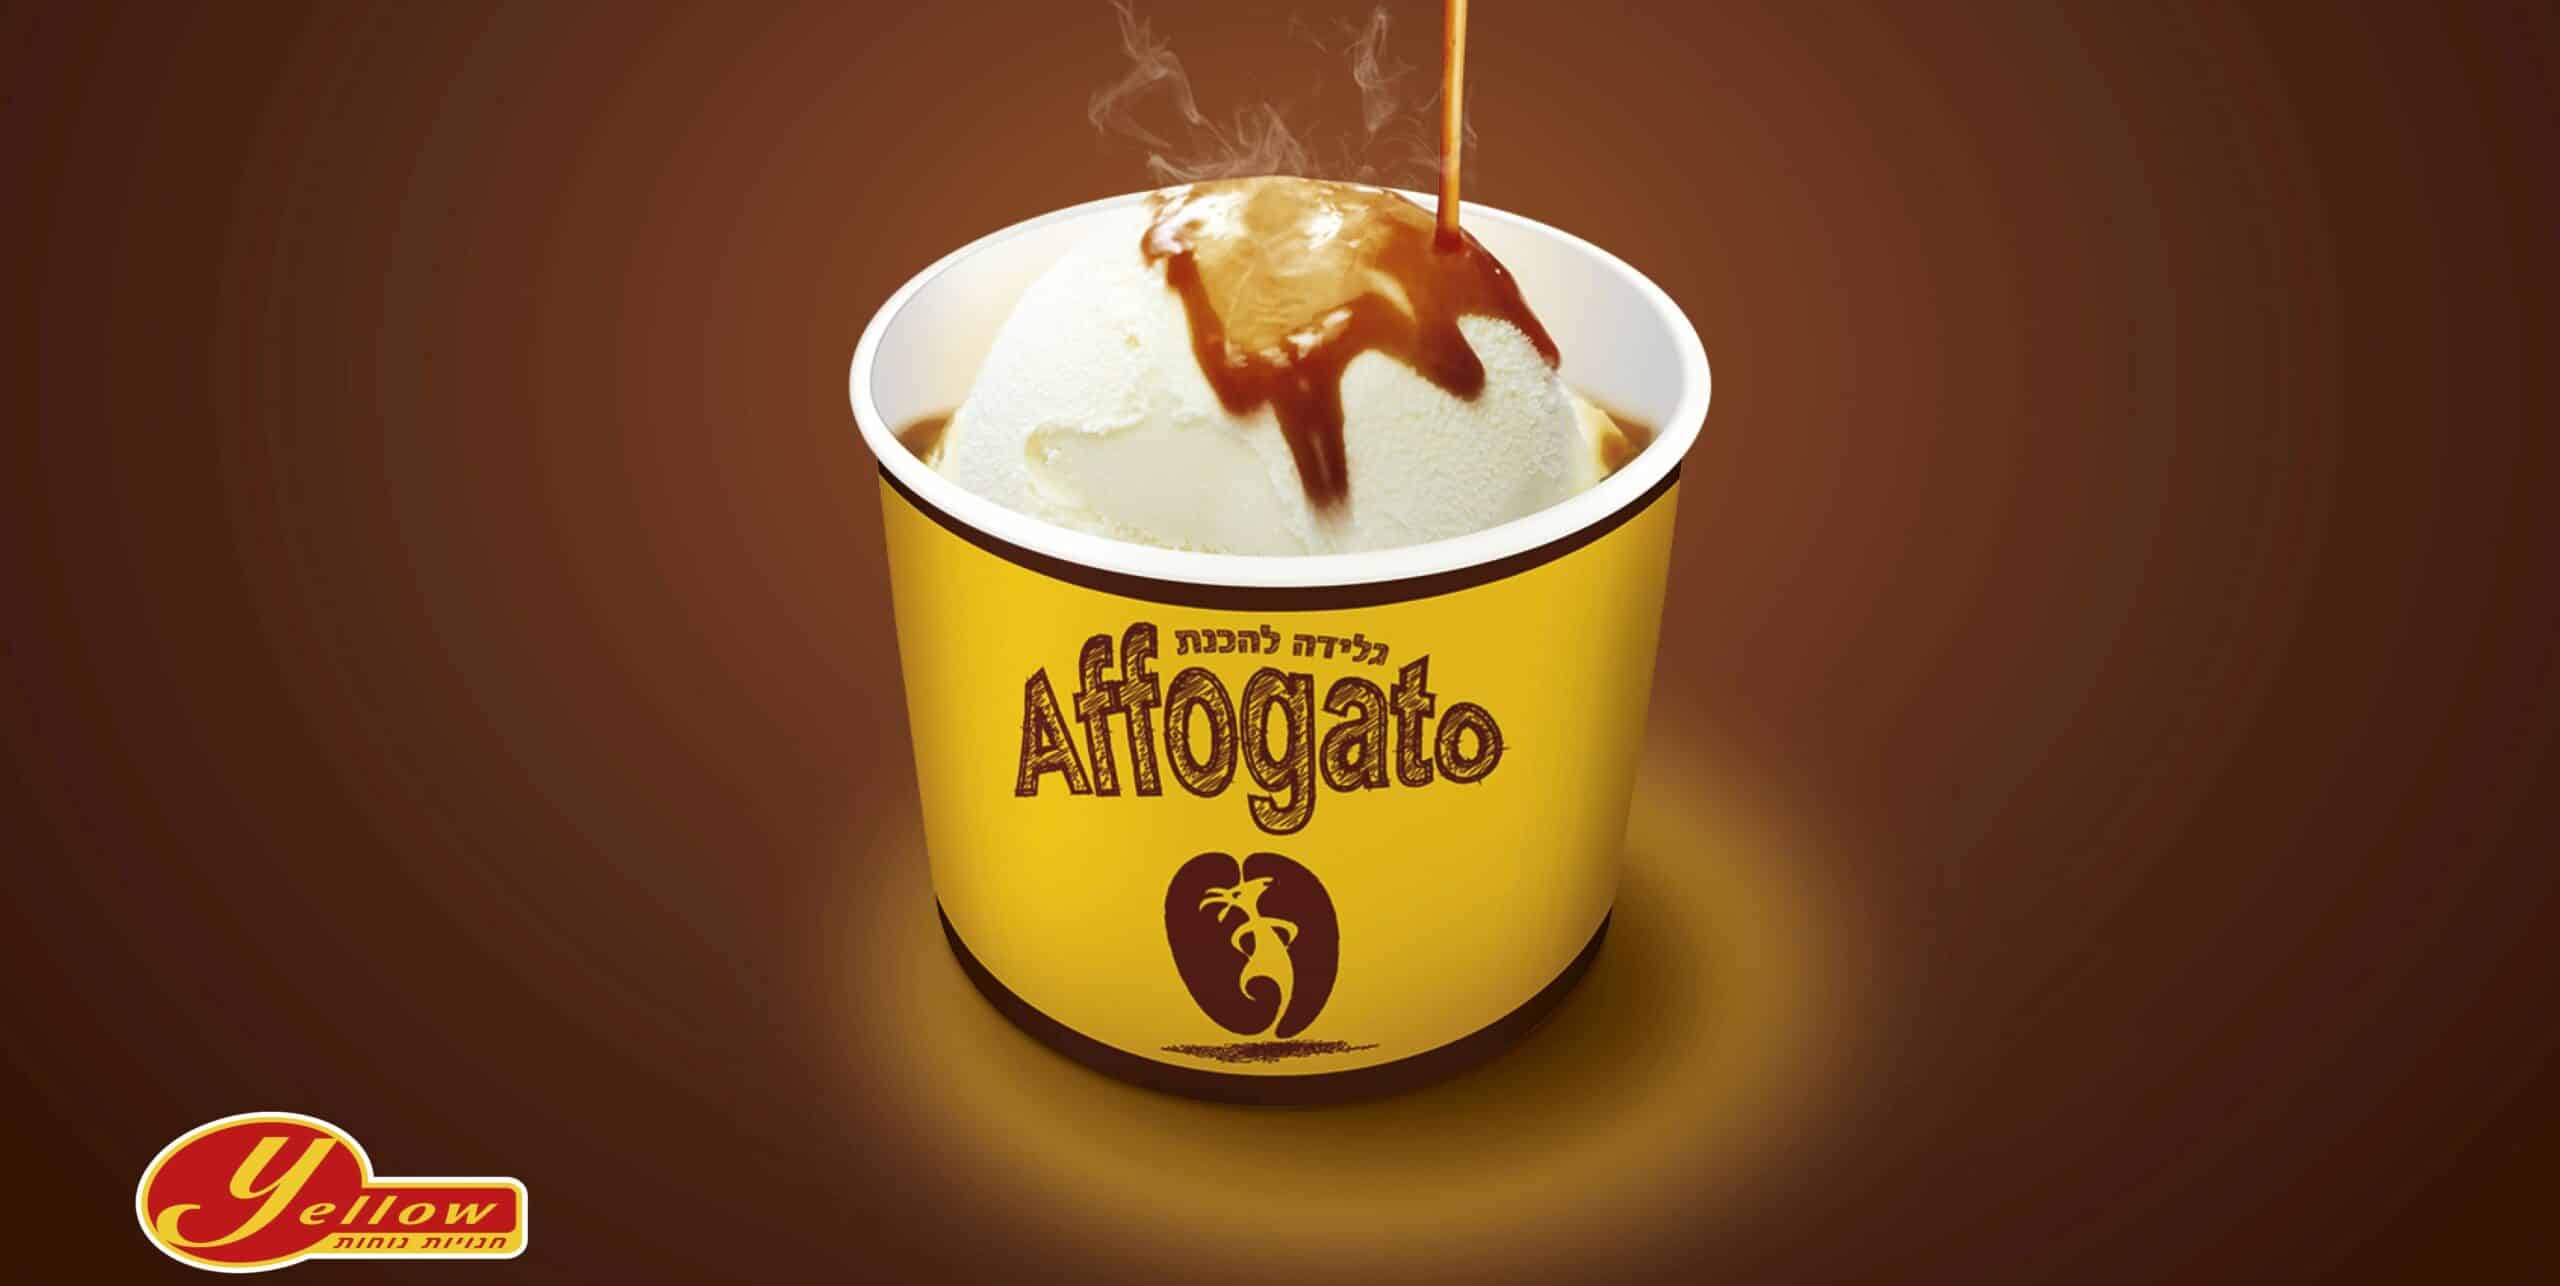 אפוגטו הוא קינוח פופולרי במטבח האיטלקי, ומשלב גלידה עליה שופכים אספרסו חם